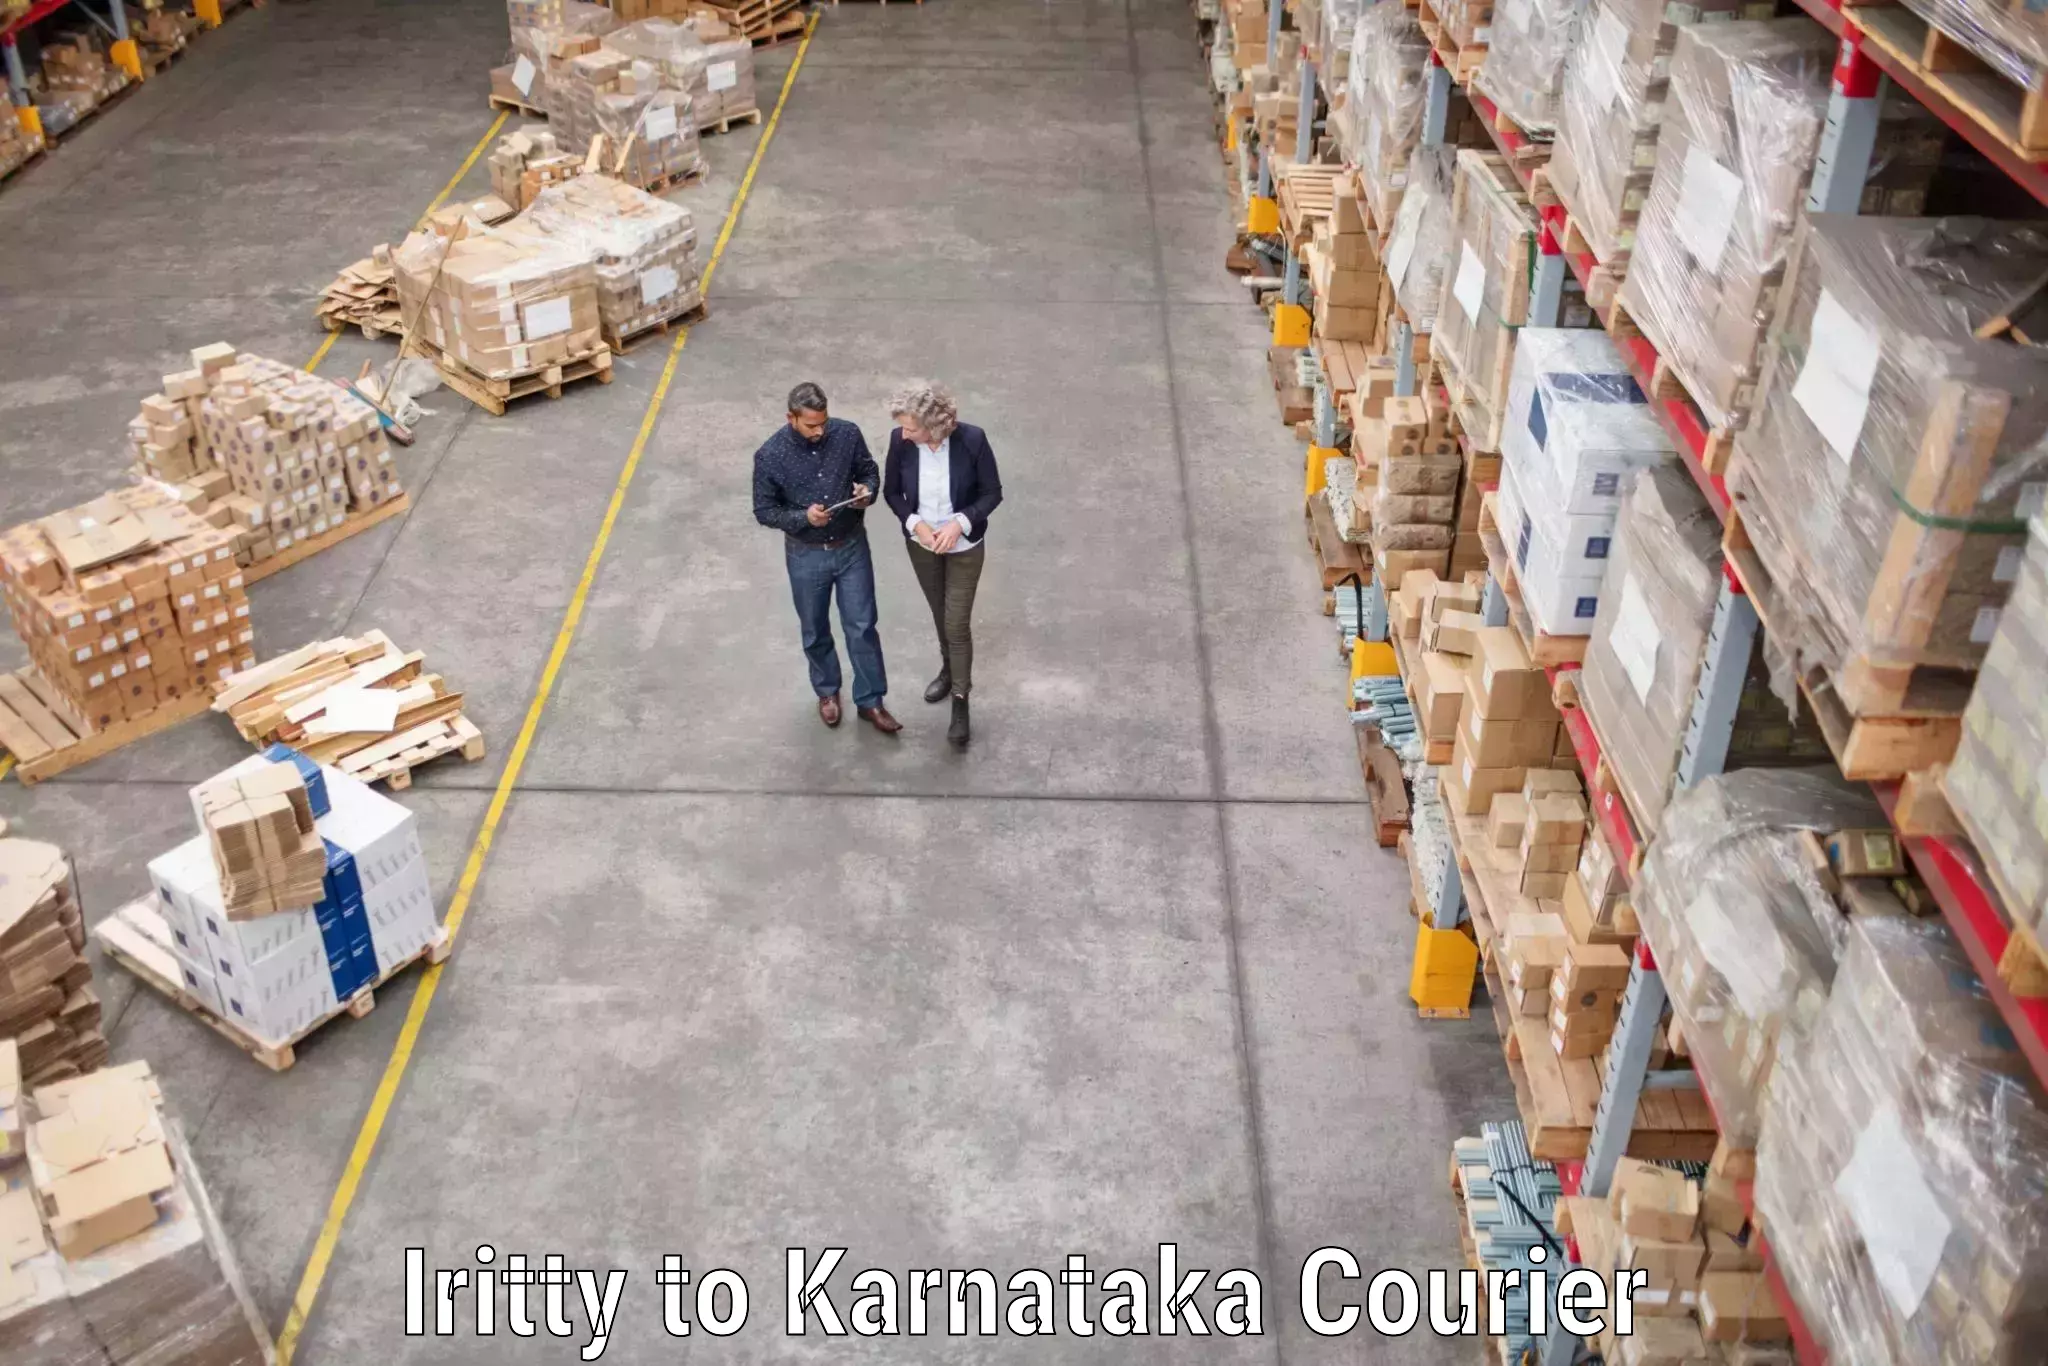 Seamless moving process Iritty to Karnataka